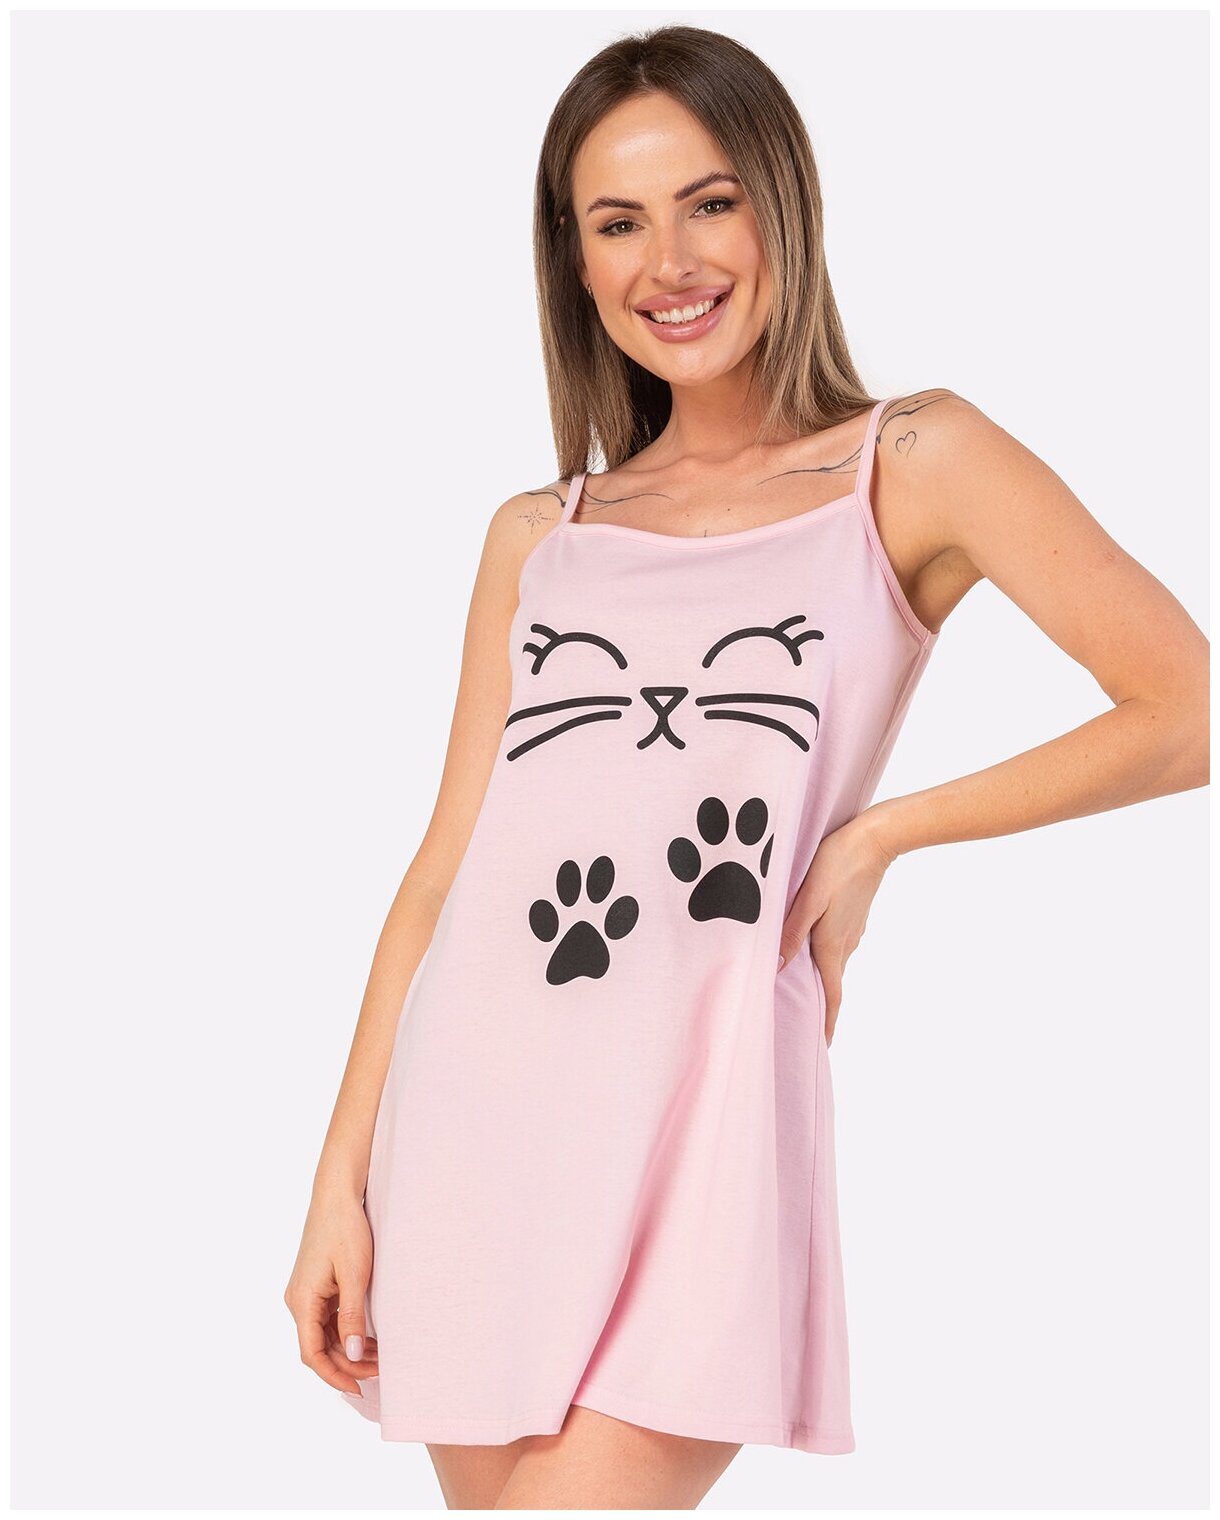 Сорочка женская HappyFox, HF004SP размер 50, цвет розовый